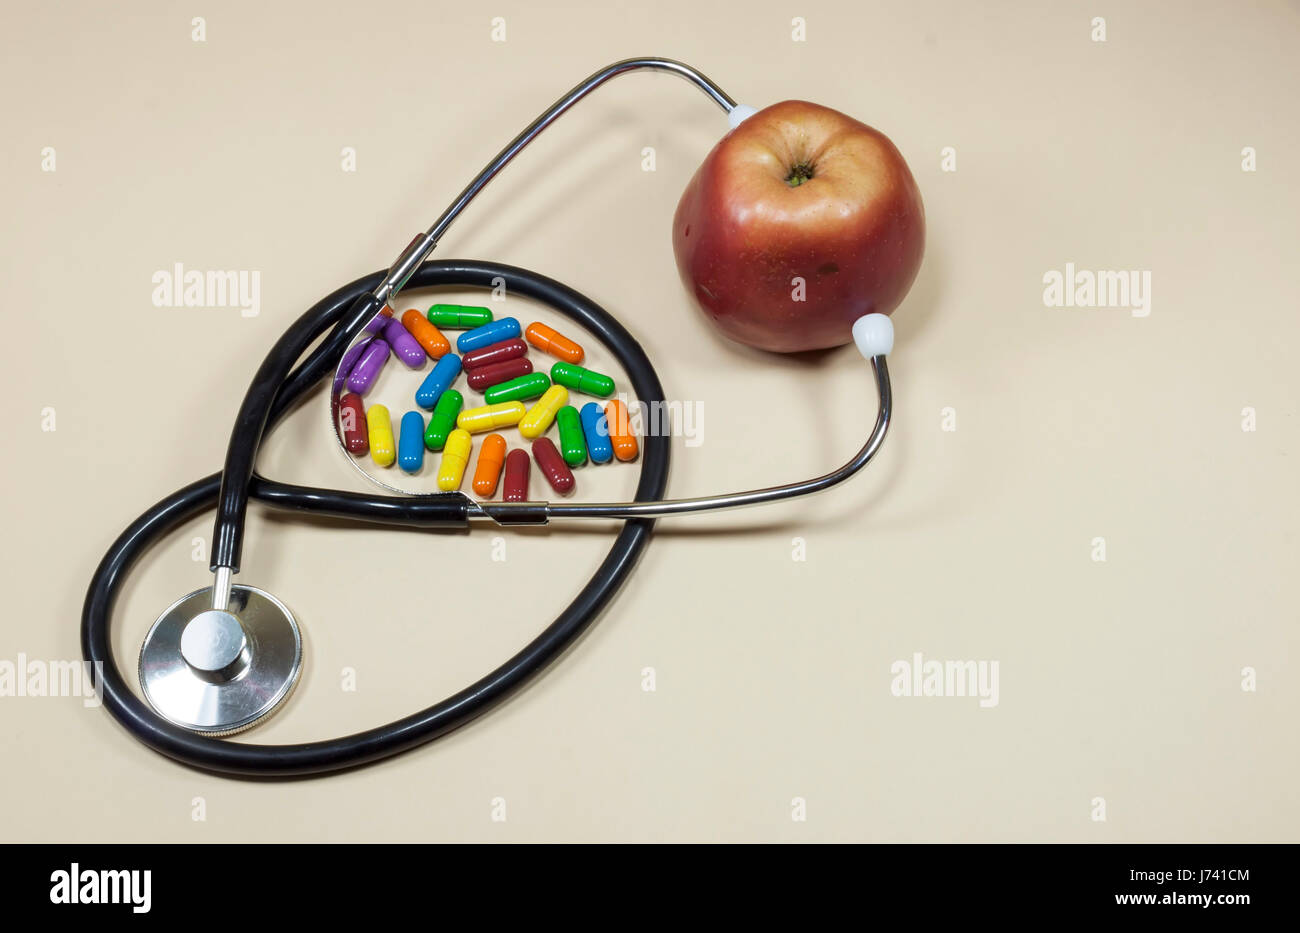 Roter Apfel Obst zwischen den Armen des medizinische Stethoskop mit farbigen Pillen beiseite, Ernährung und gesunde Ernährung und Lifestyle-Konzept Stockfoto